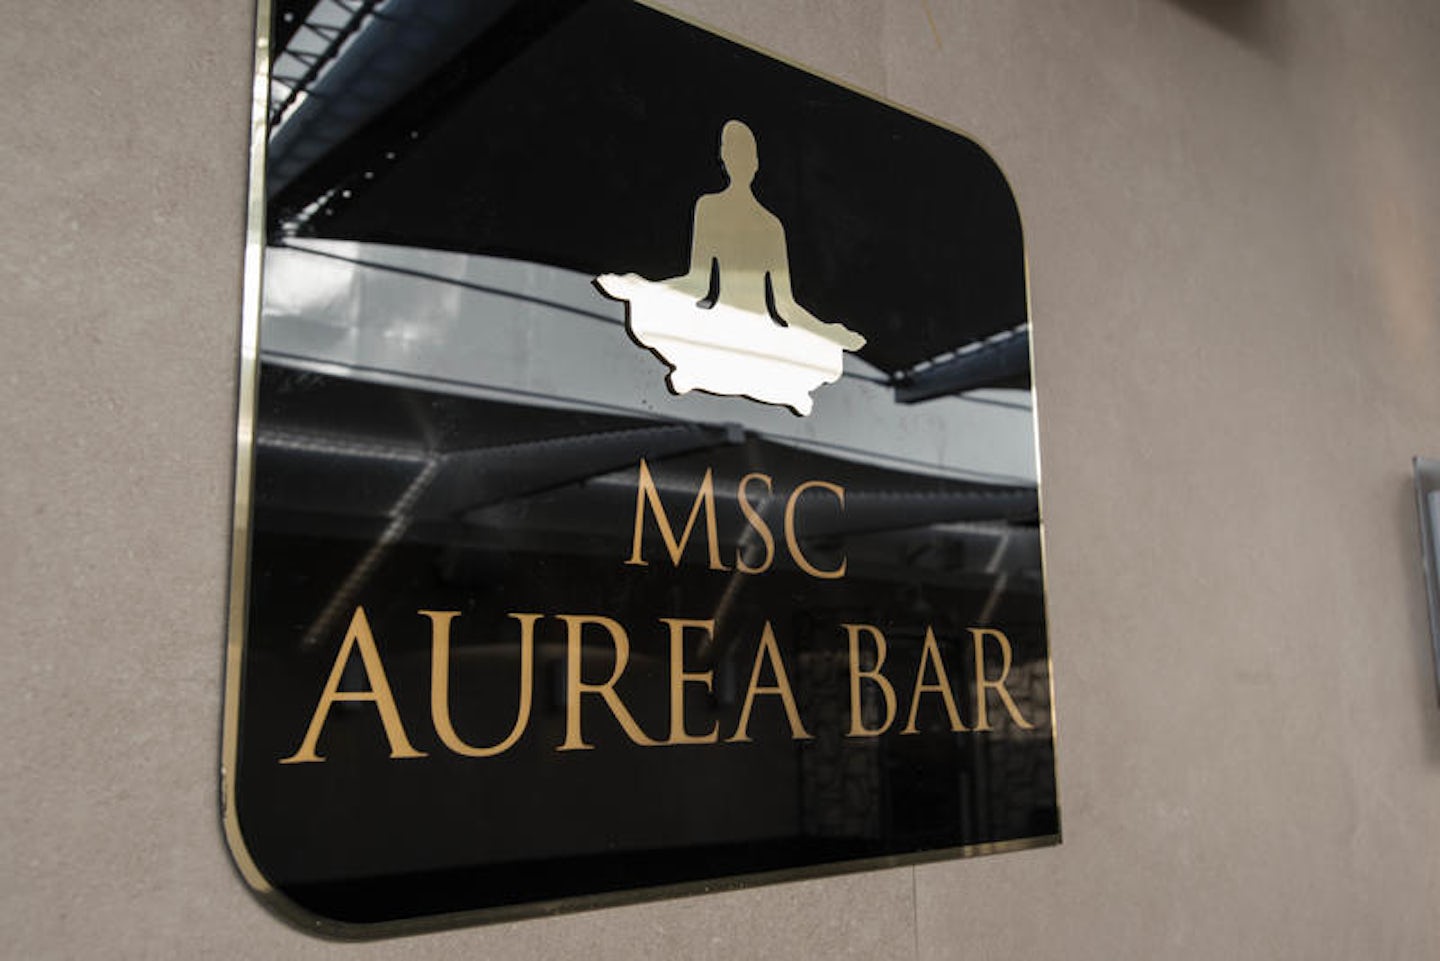 Aurea Bar on MSC Seaside